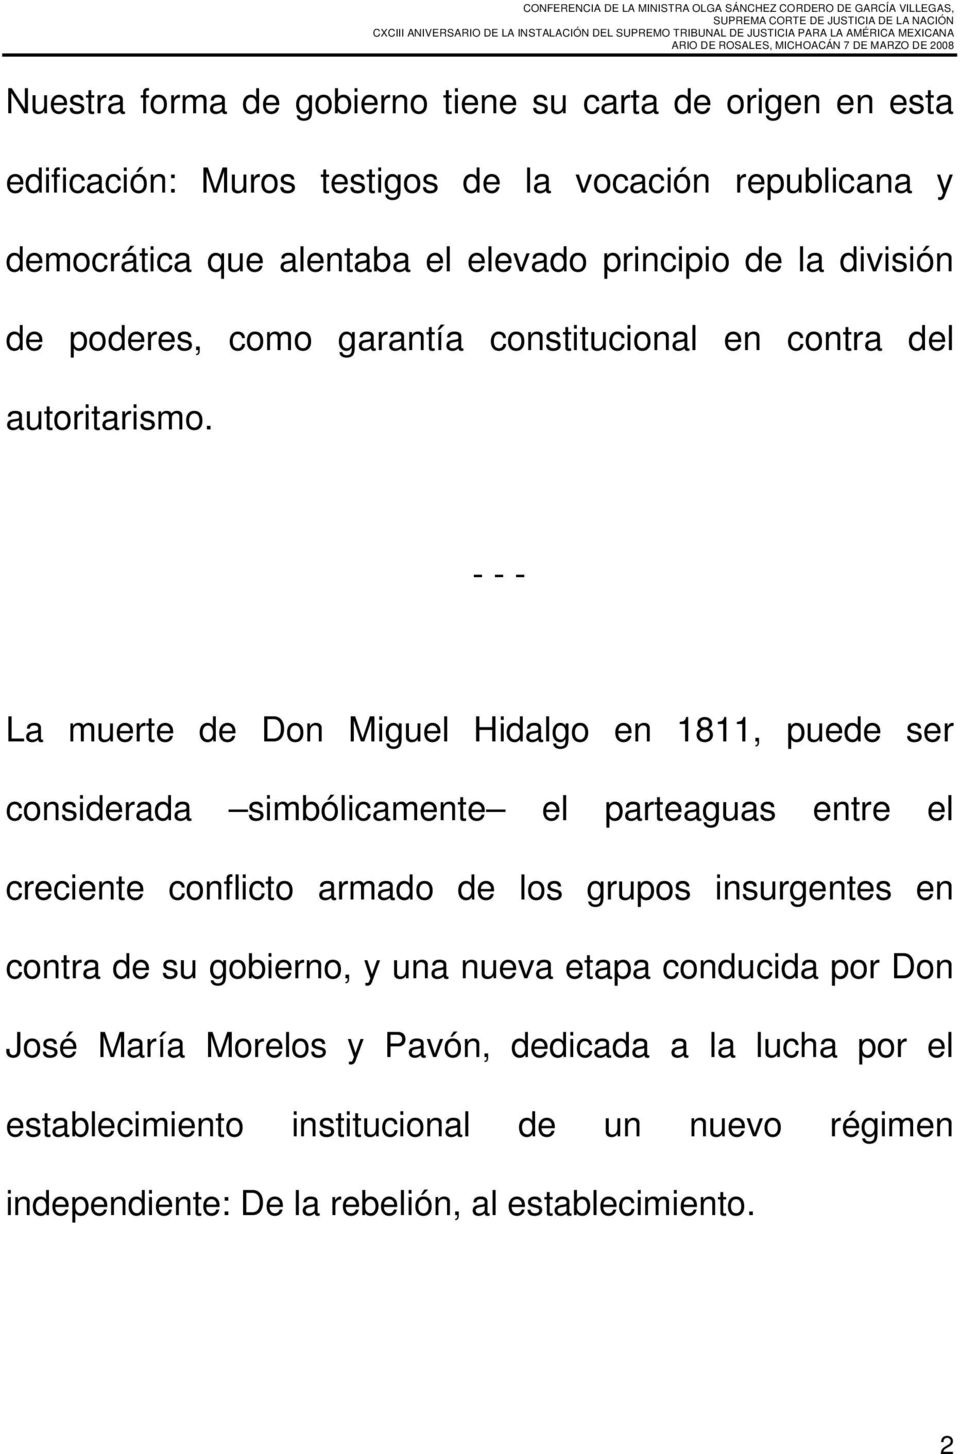 - - - La muerte de Don Miguel Hidalgo en 1811, puede ser considerada simbólicamente el parteaguas entre el creciente conflicto armado de los grupos